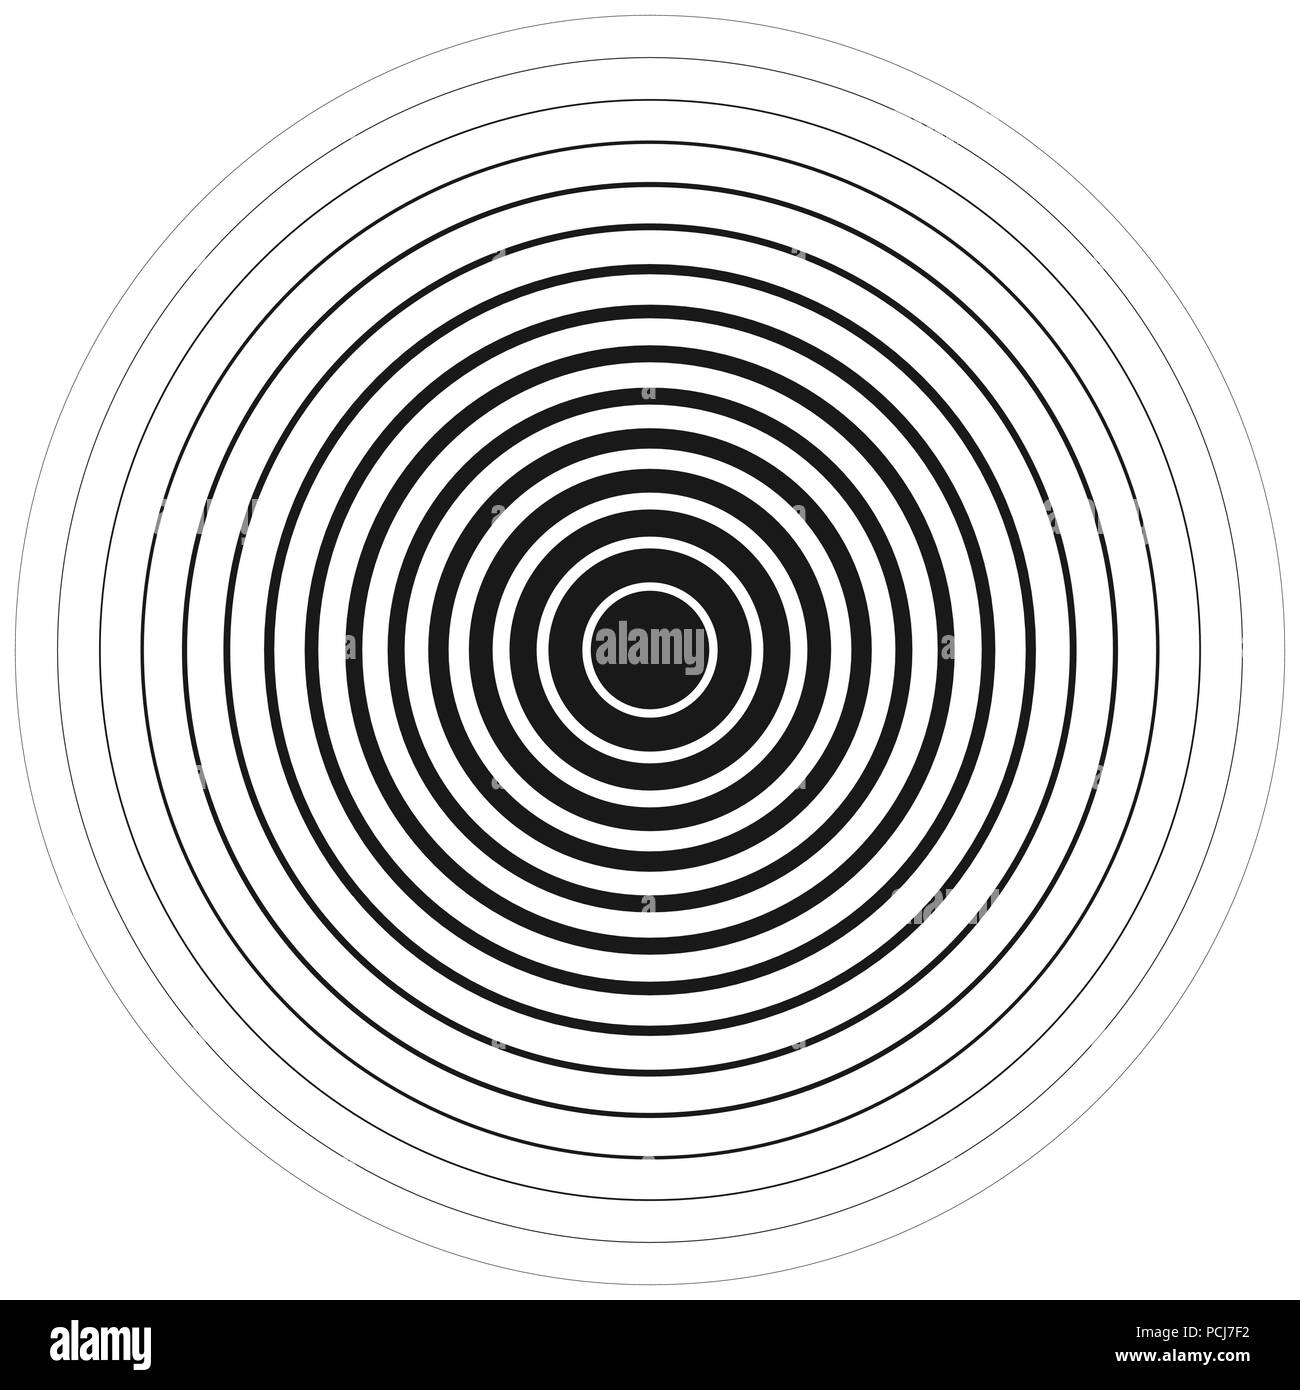 Cercles concentriques en lignes noires sur fond blanc. Vector illustration. EPS 10 Illustration de Vecteur